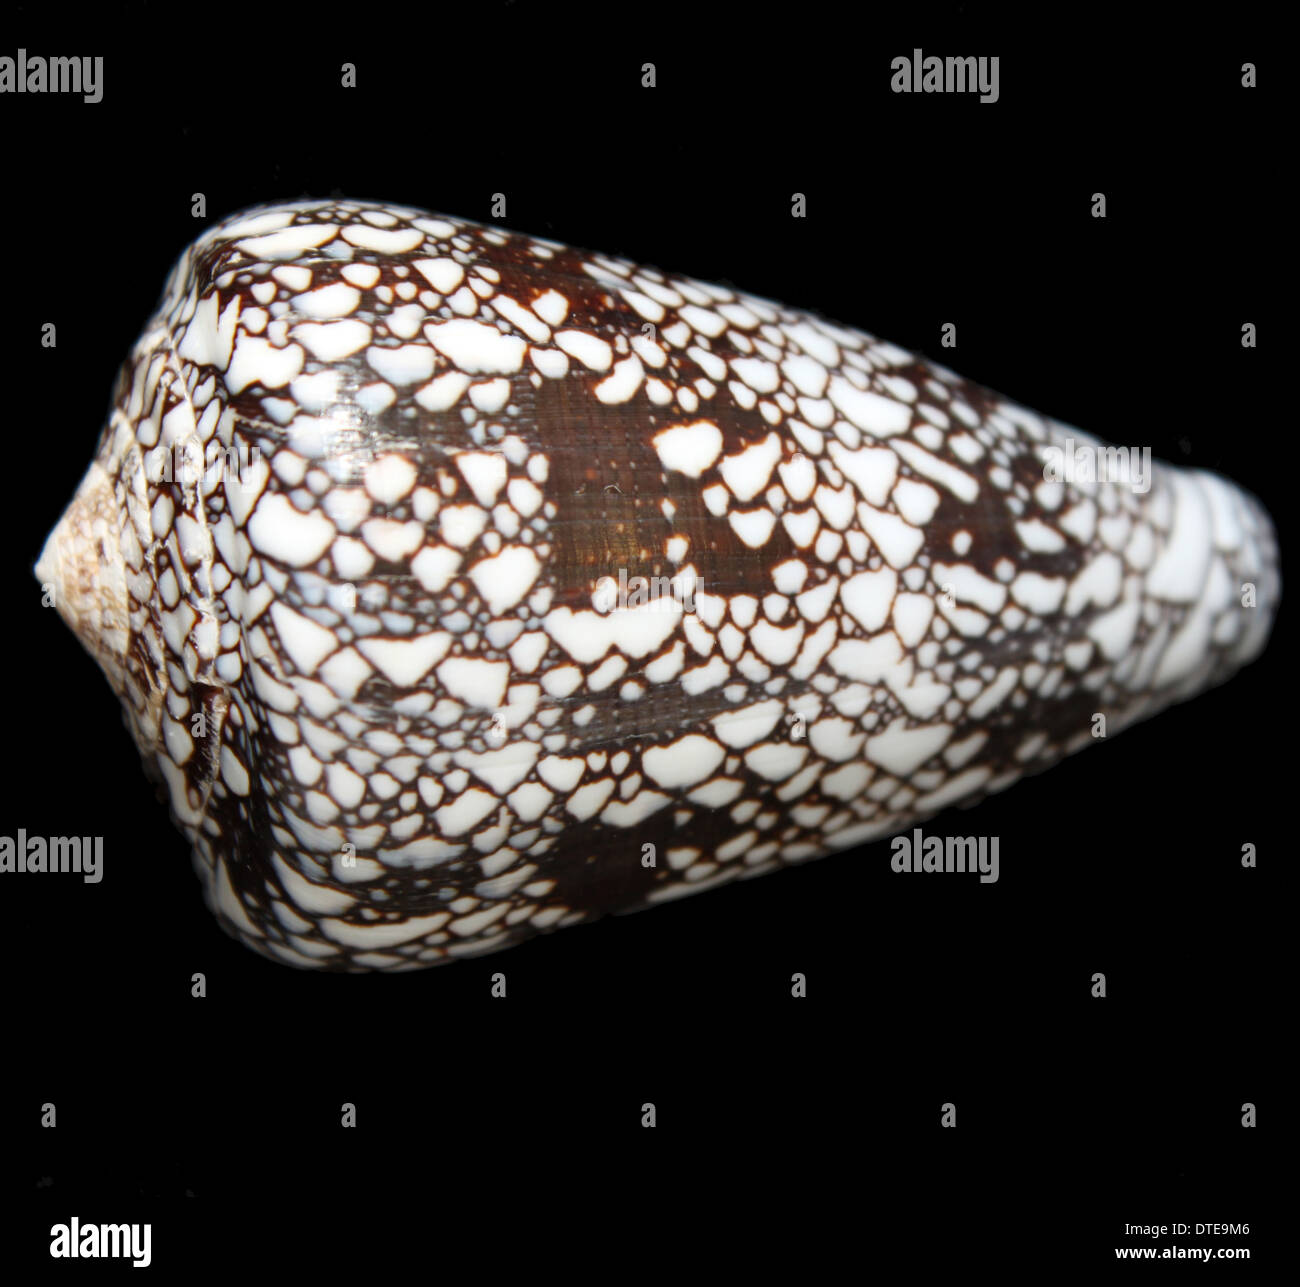 The shell of a penniform cone snail (Conus pennaceus) Stock Photo